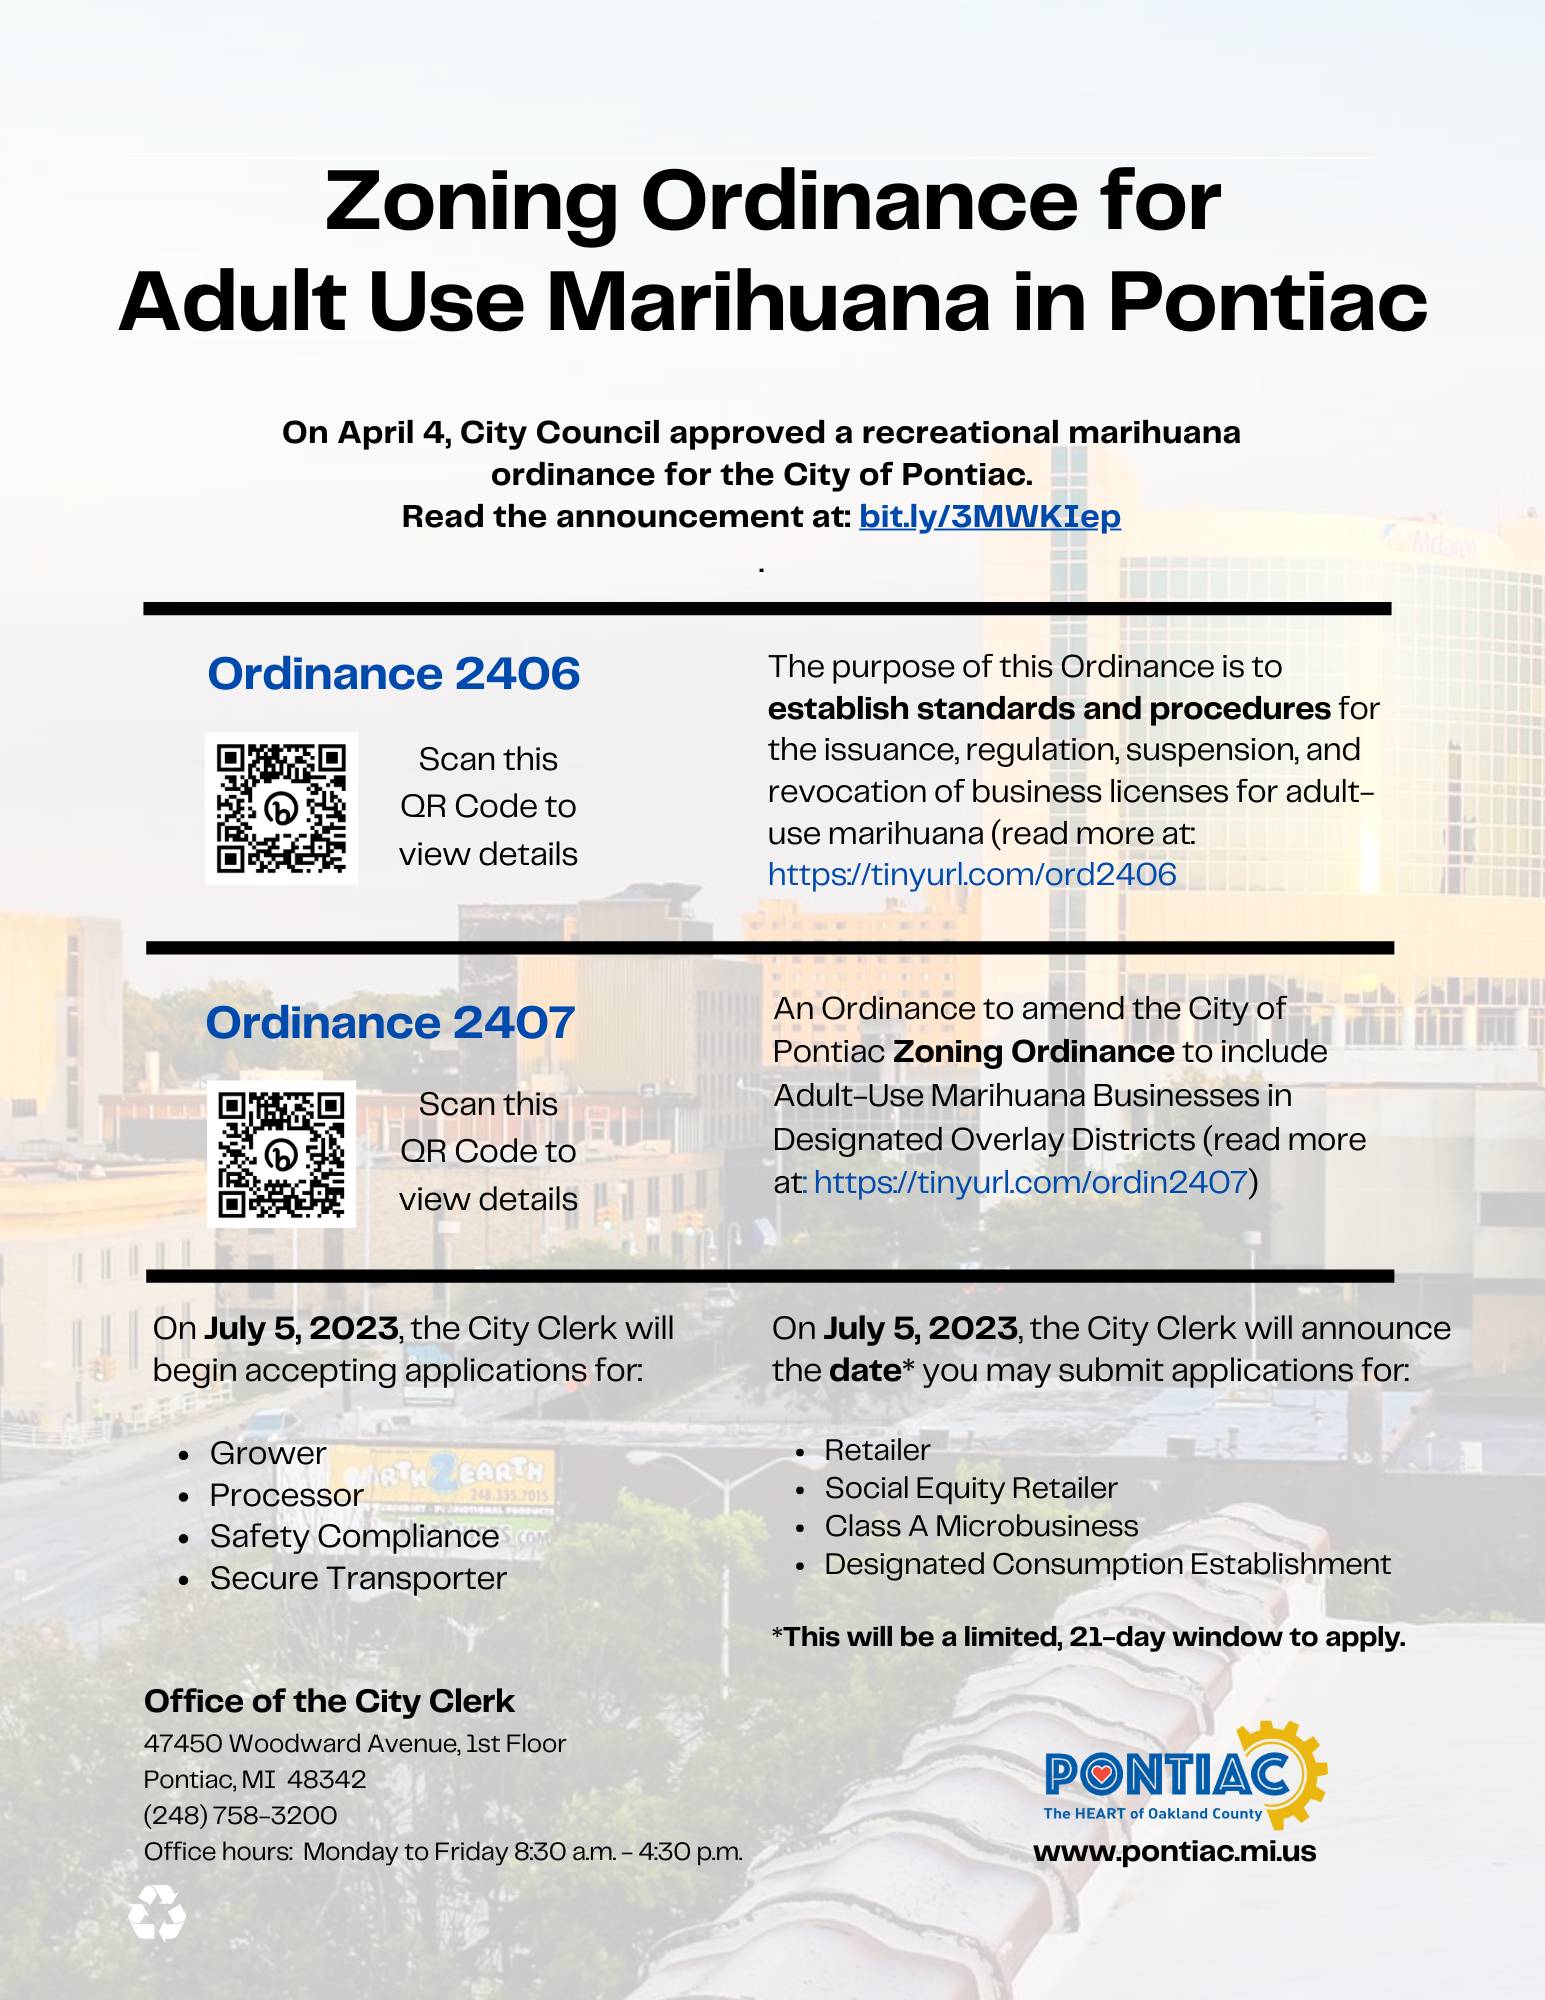 Marihuana Ordinances 2406 and 2407 - Copy